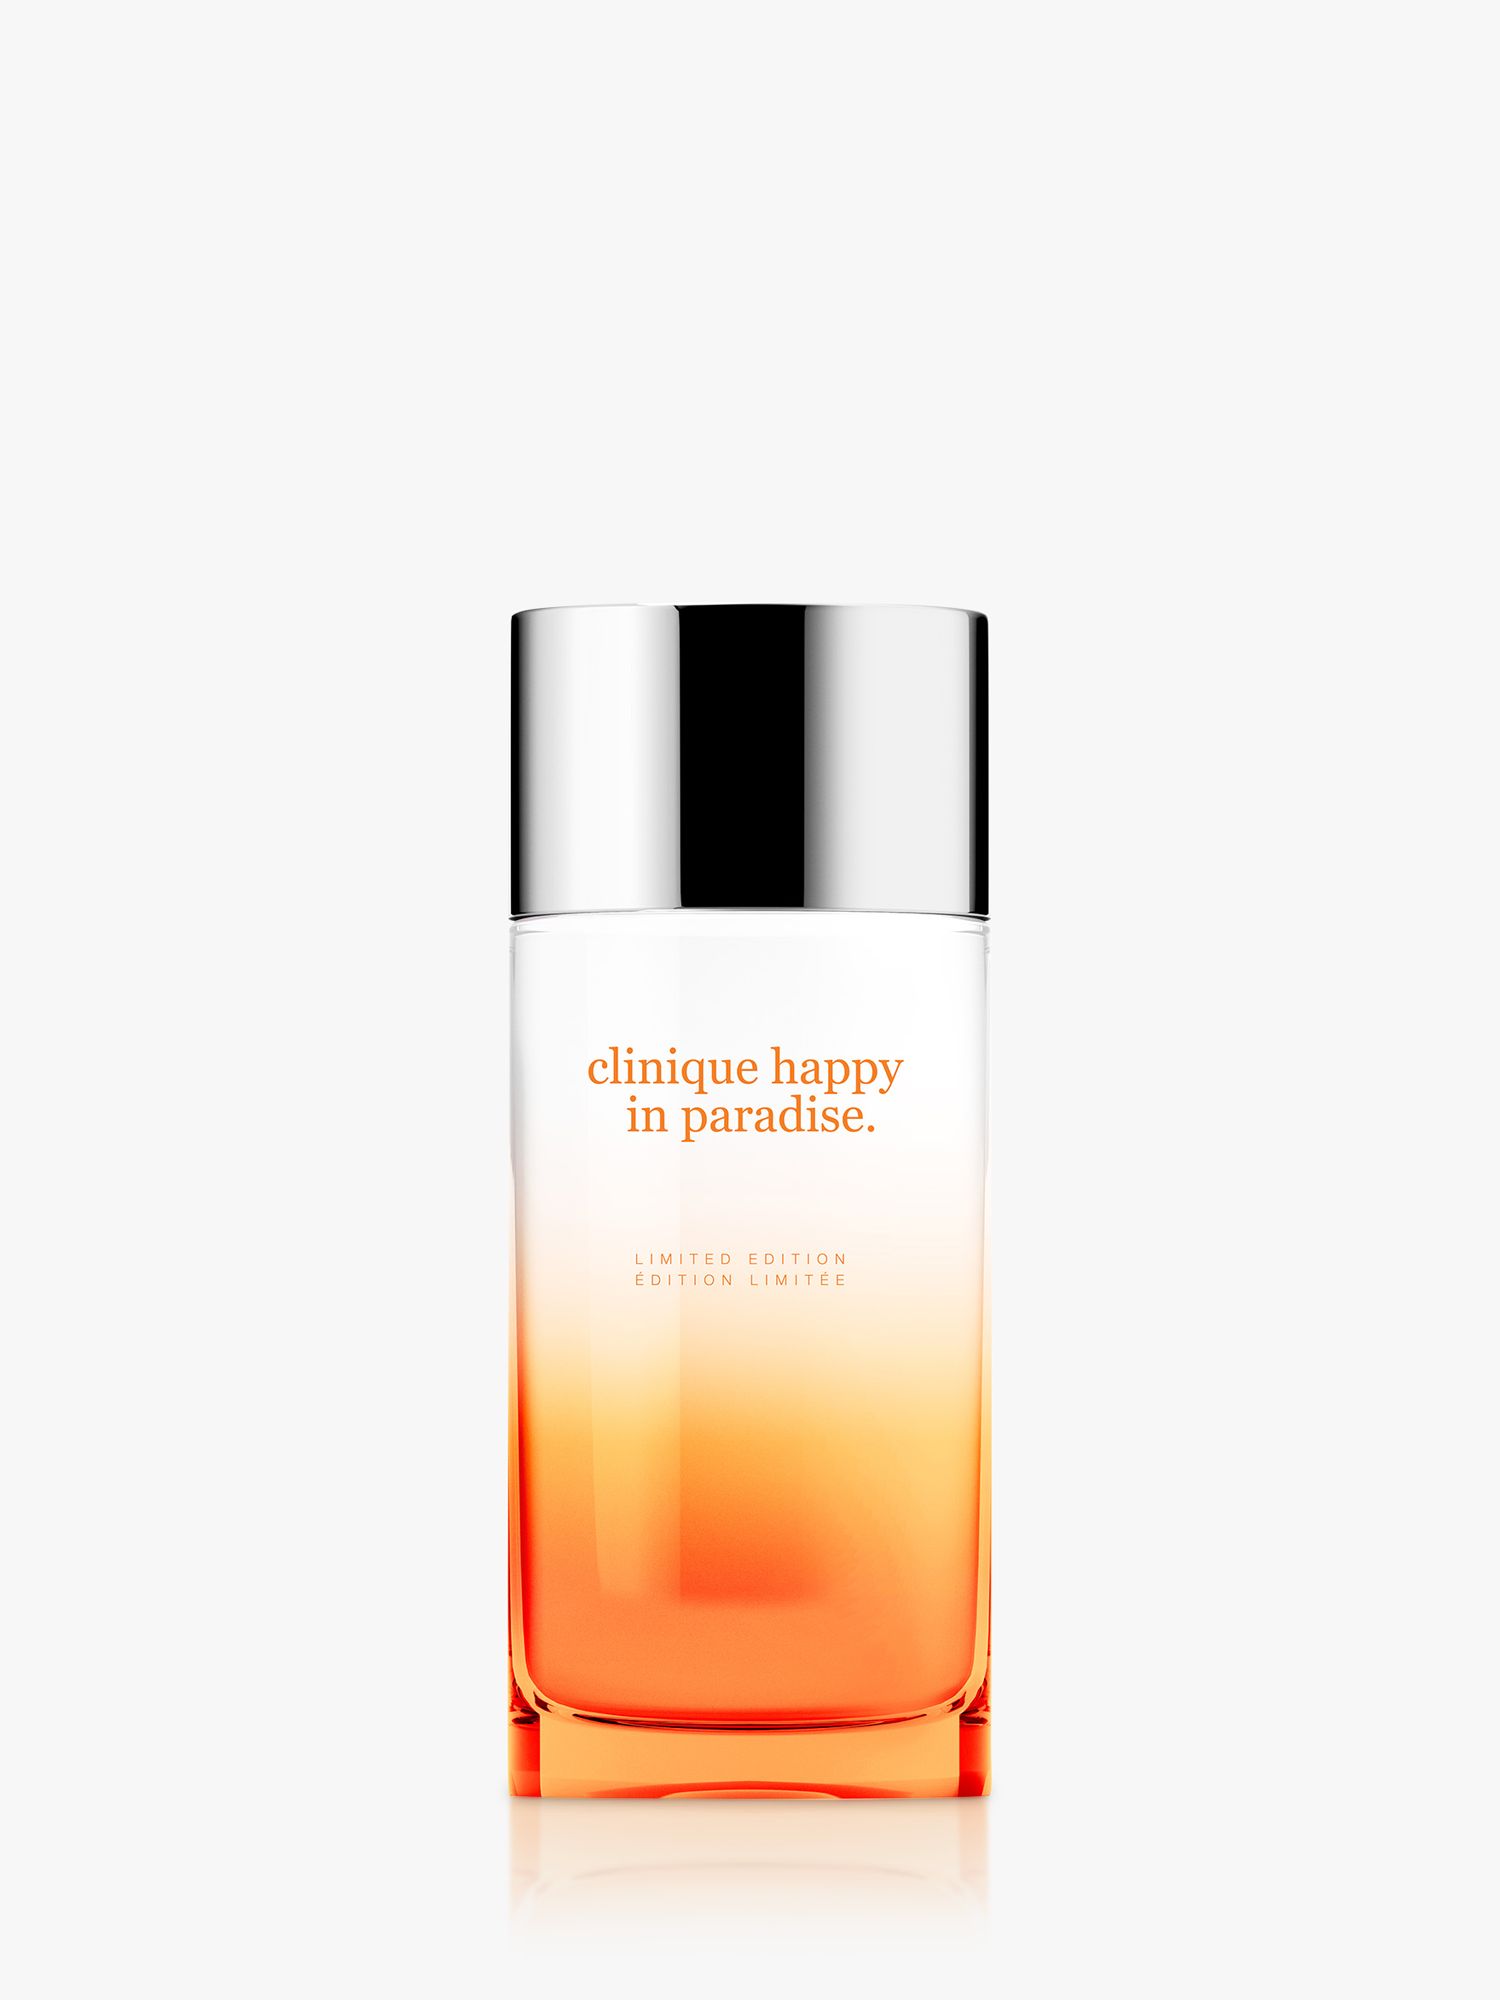 Clinique Happy in Paradise Limited Edition Eau de Parfum, 100ml